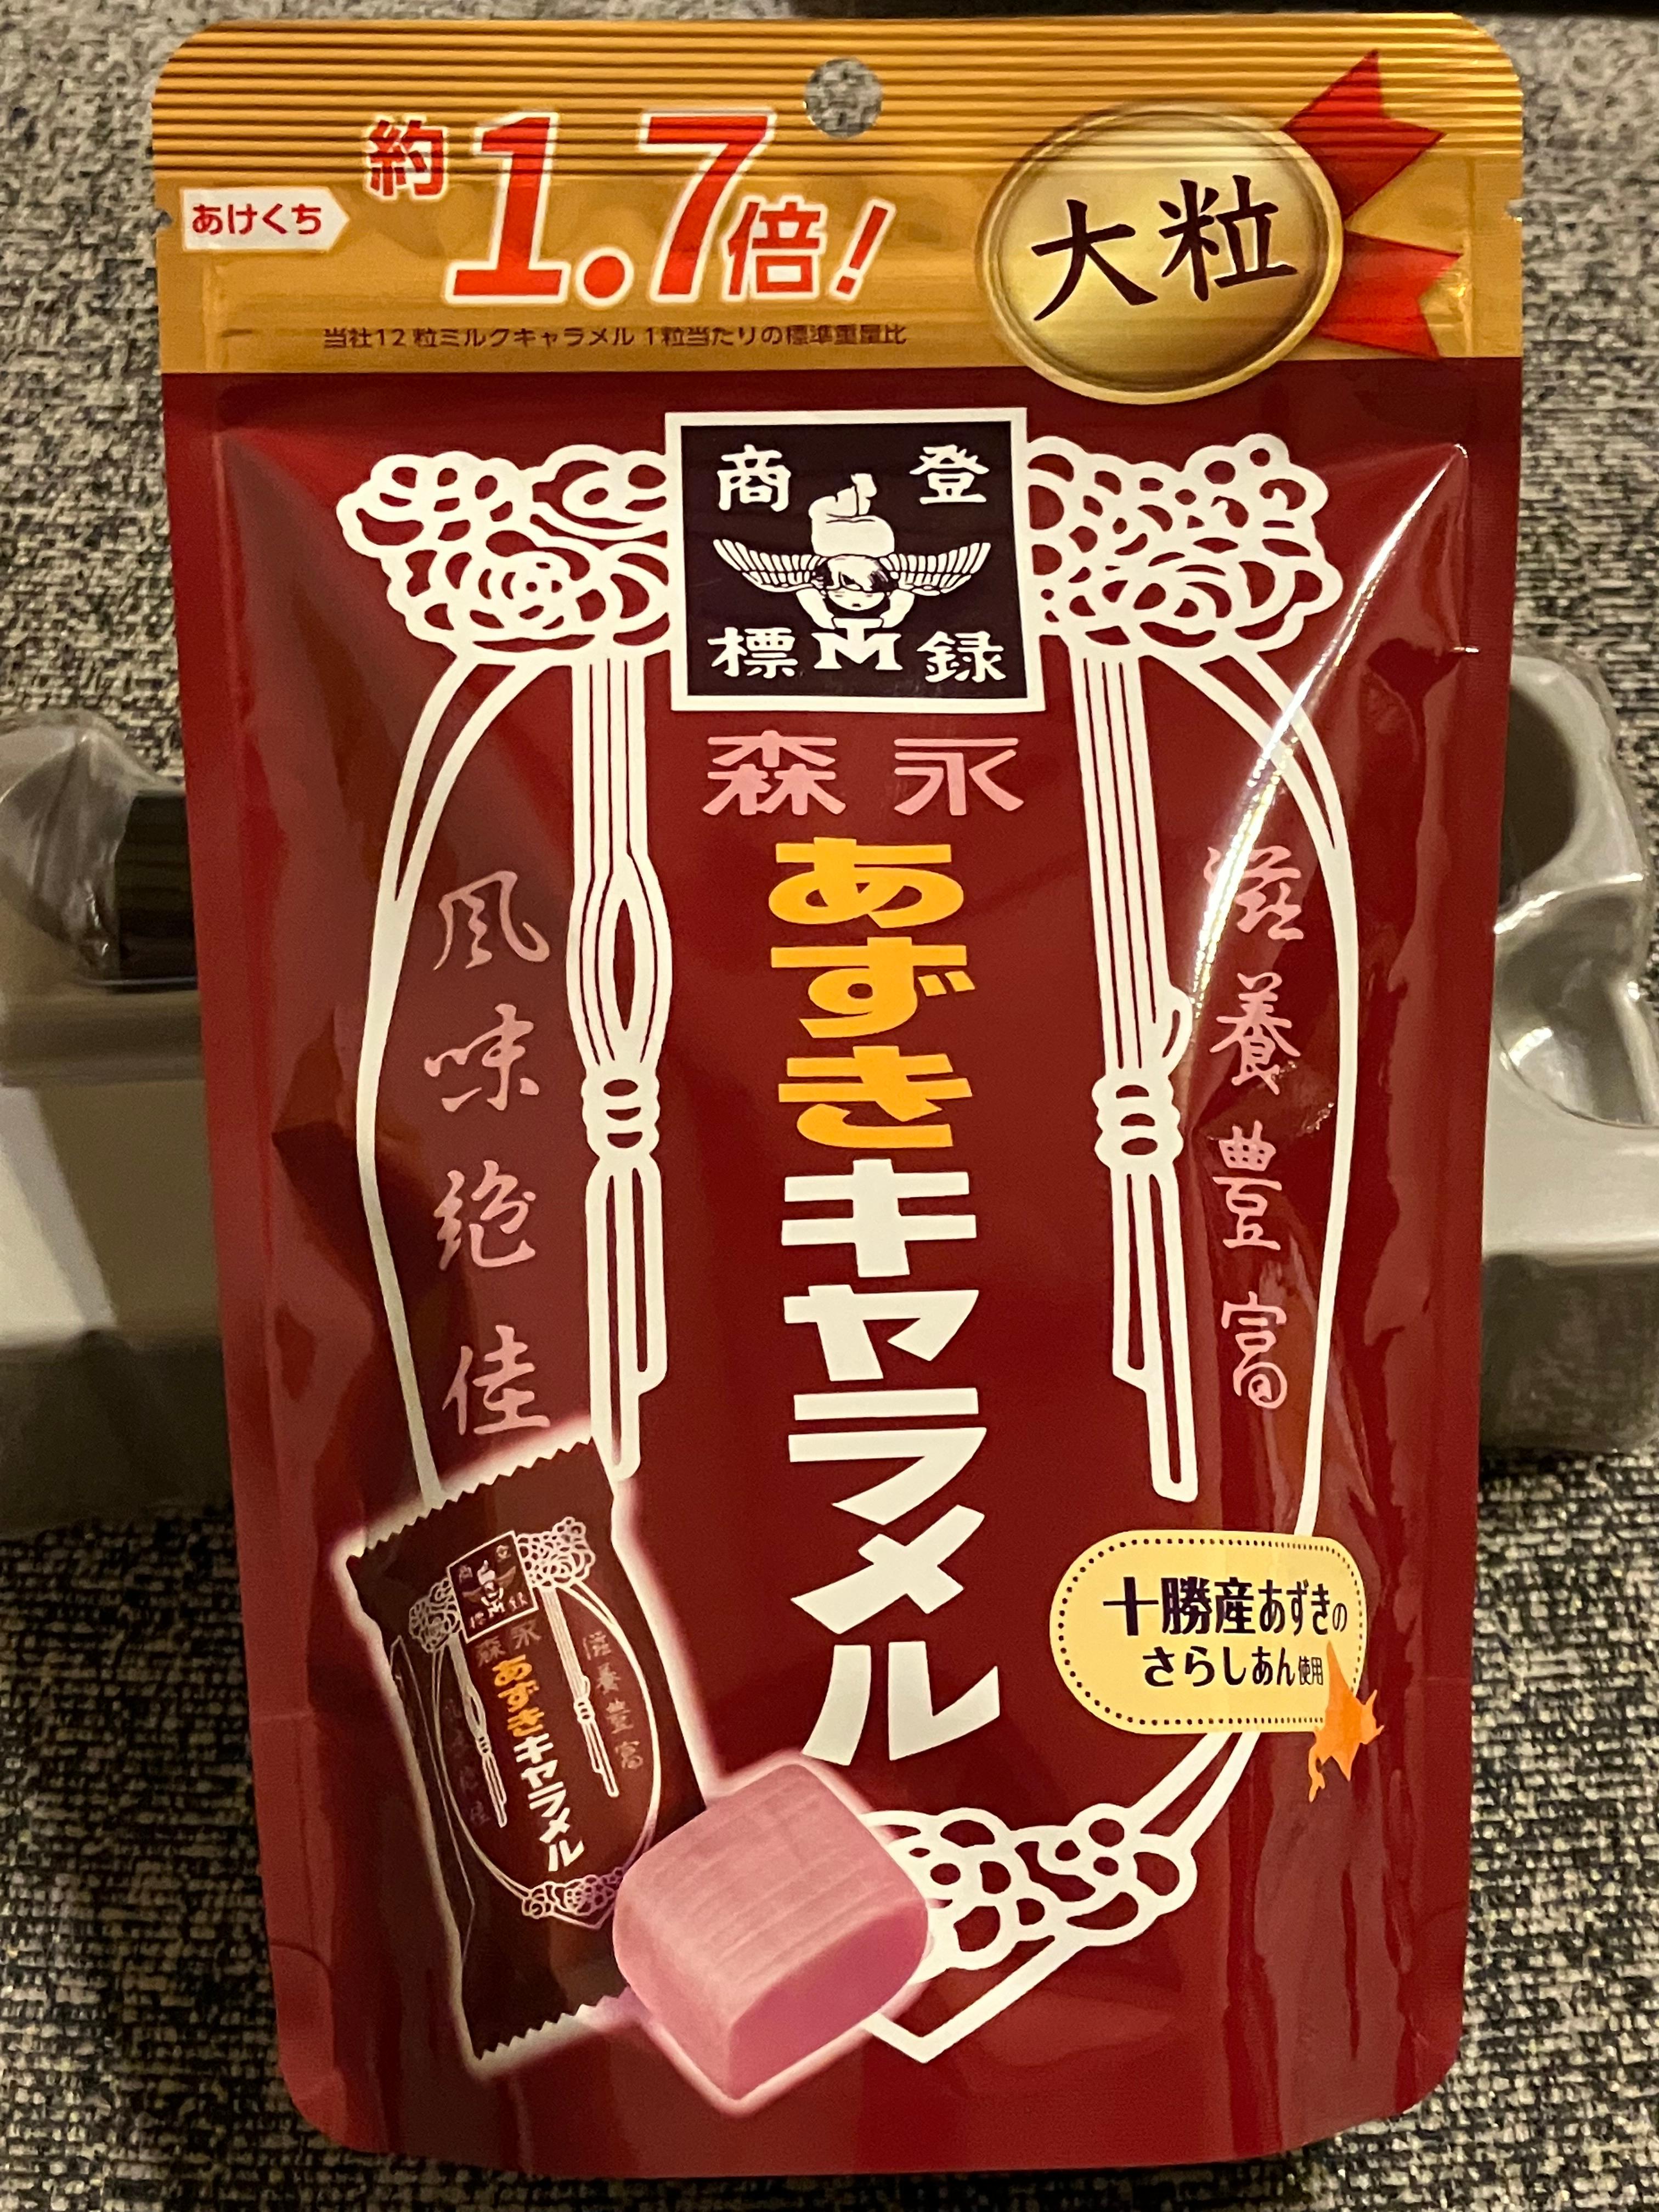 あずきキャラメル大粒 3袋 森永製菓